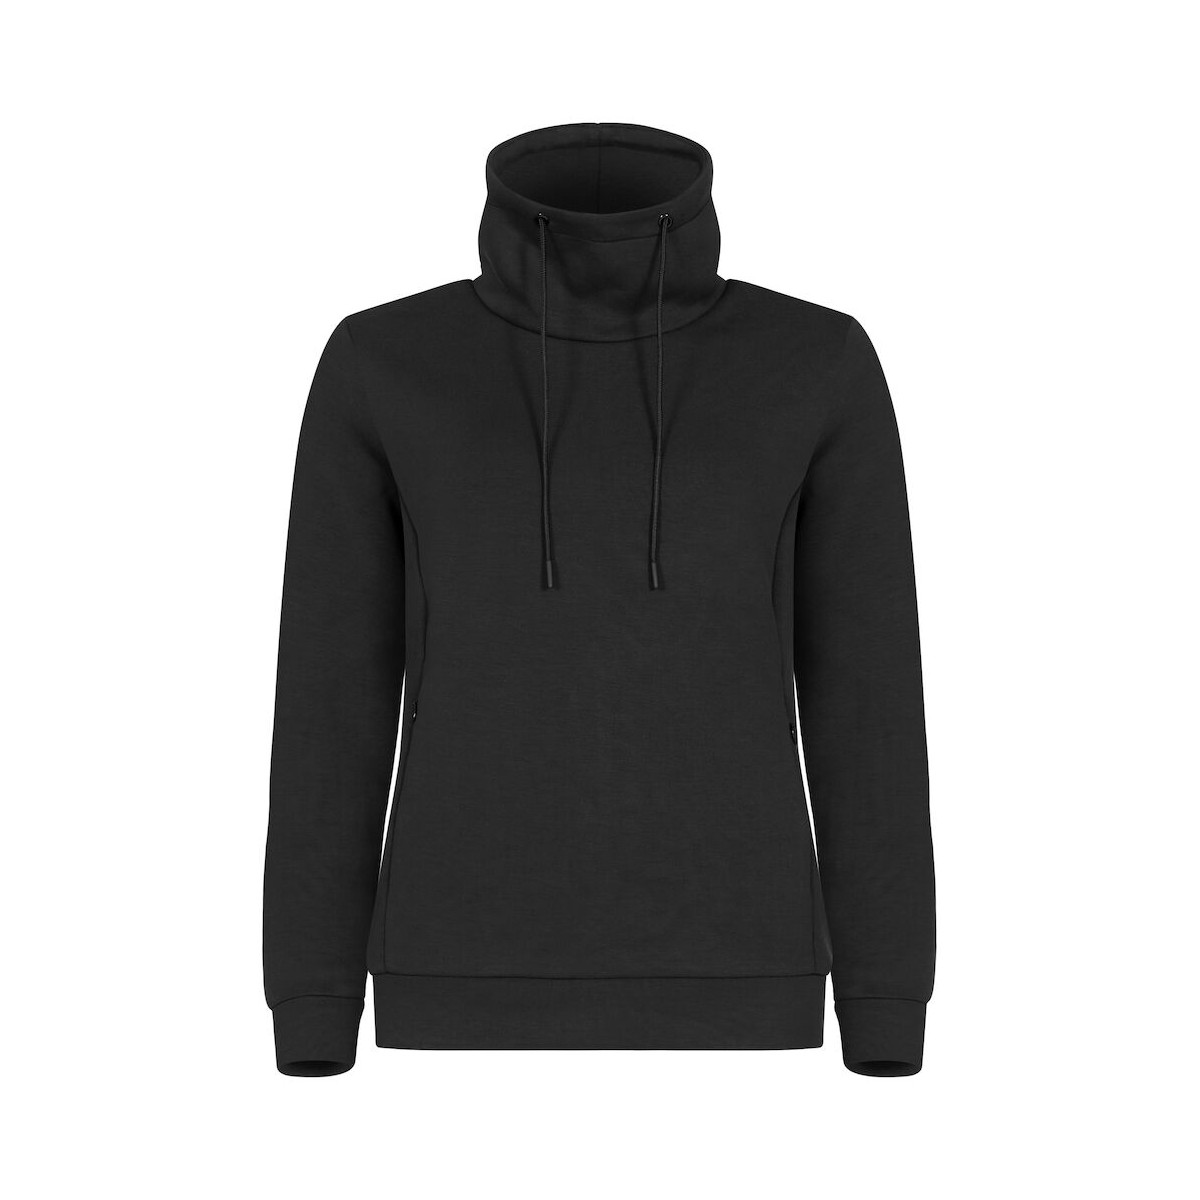 Sweatshirt col haut - Polyester recyclé, viscose et élasthanne - CLIQUE - Couleur noir - Personnalisable en petite quantité